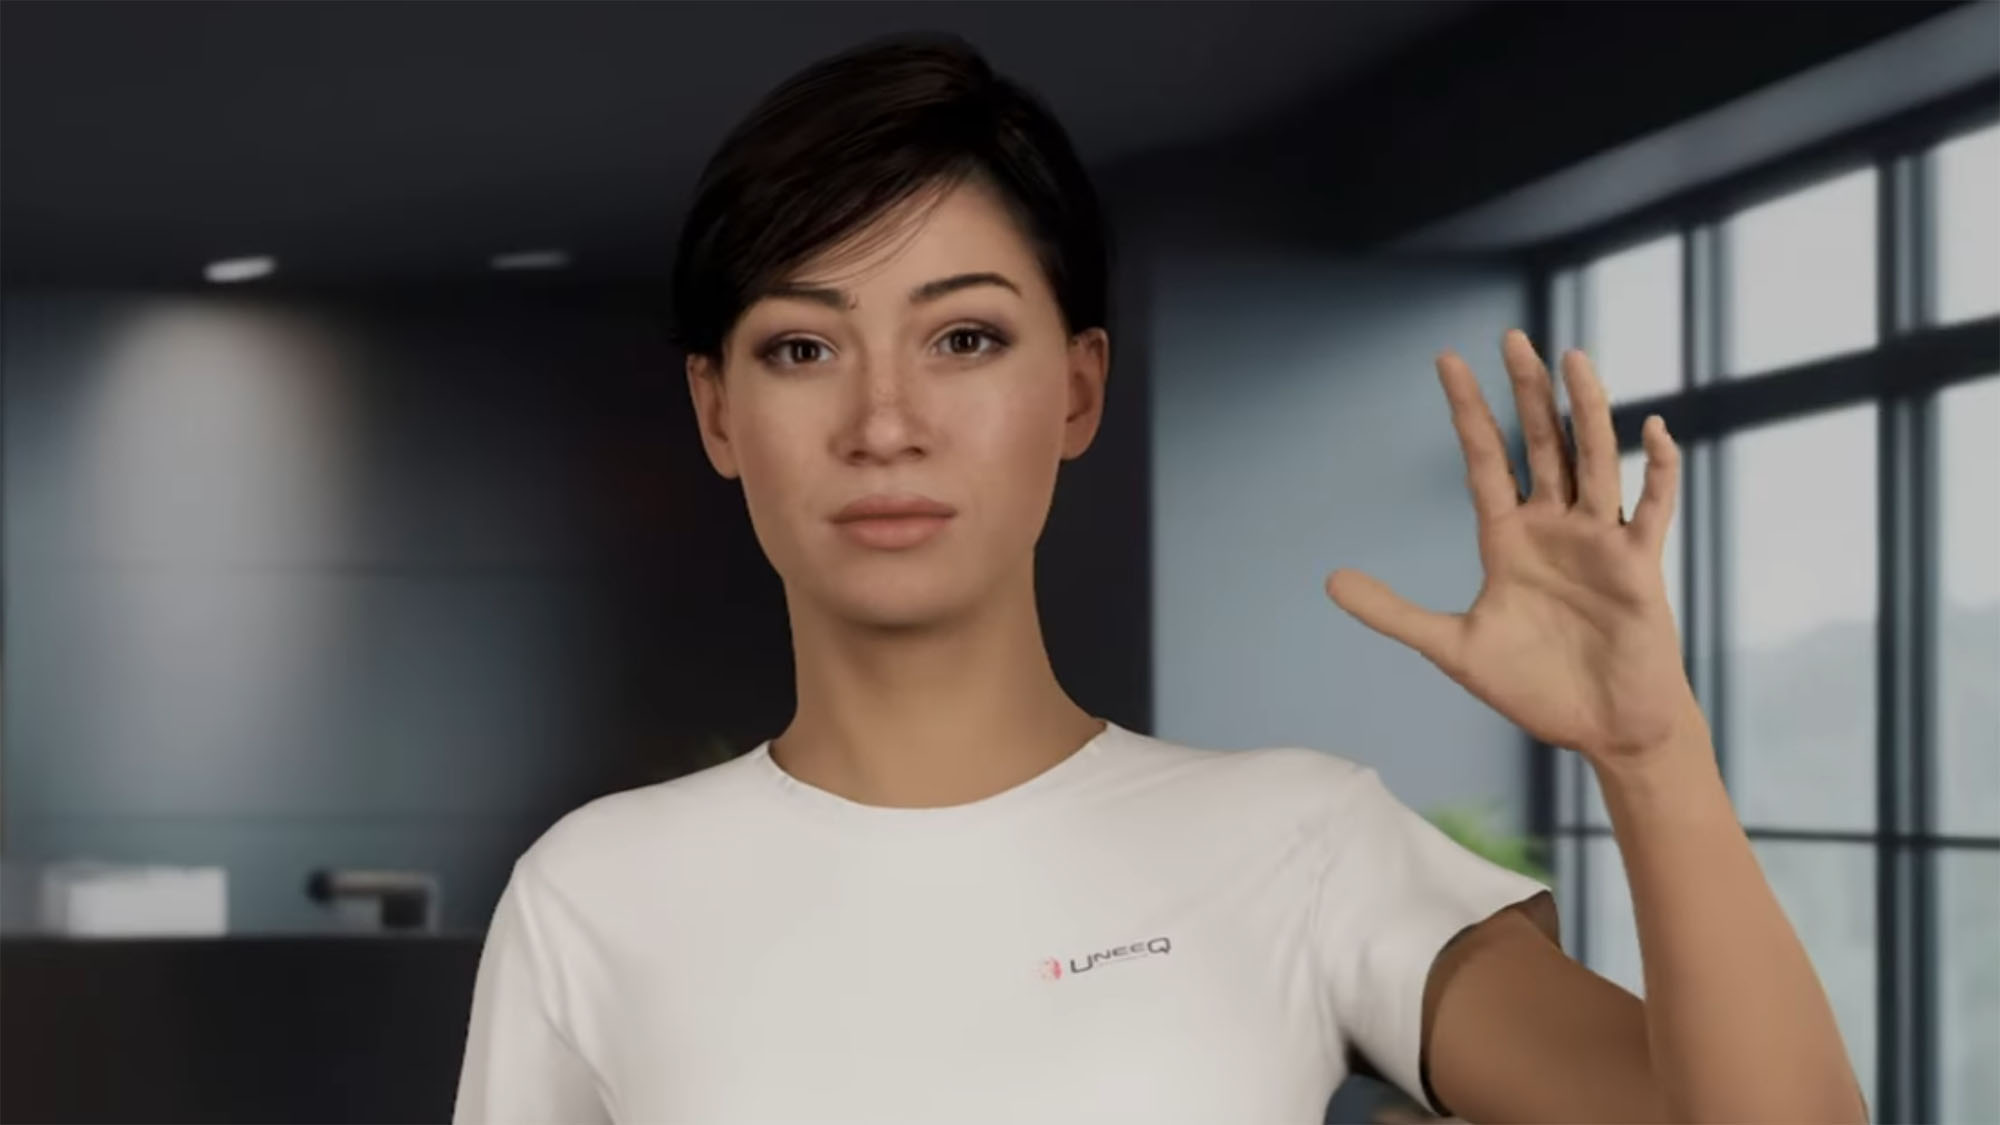 An example of an Nvidia 'digital human' brand ambassador.